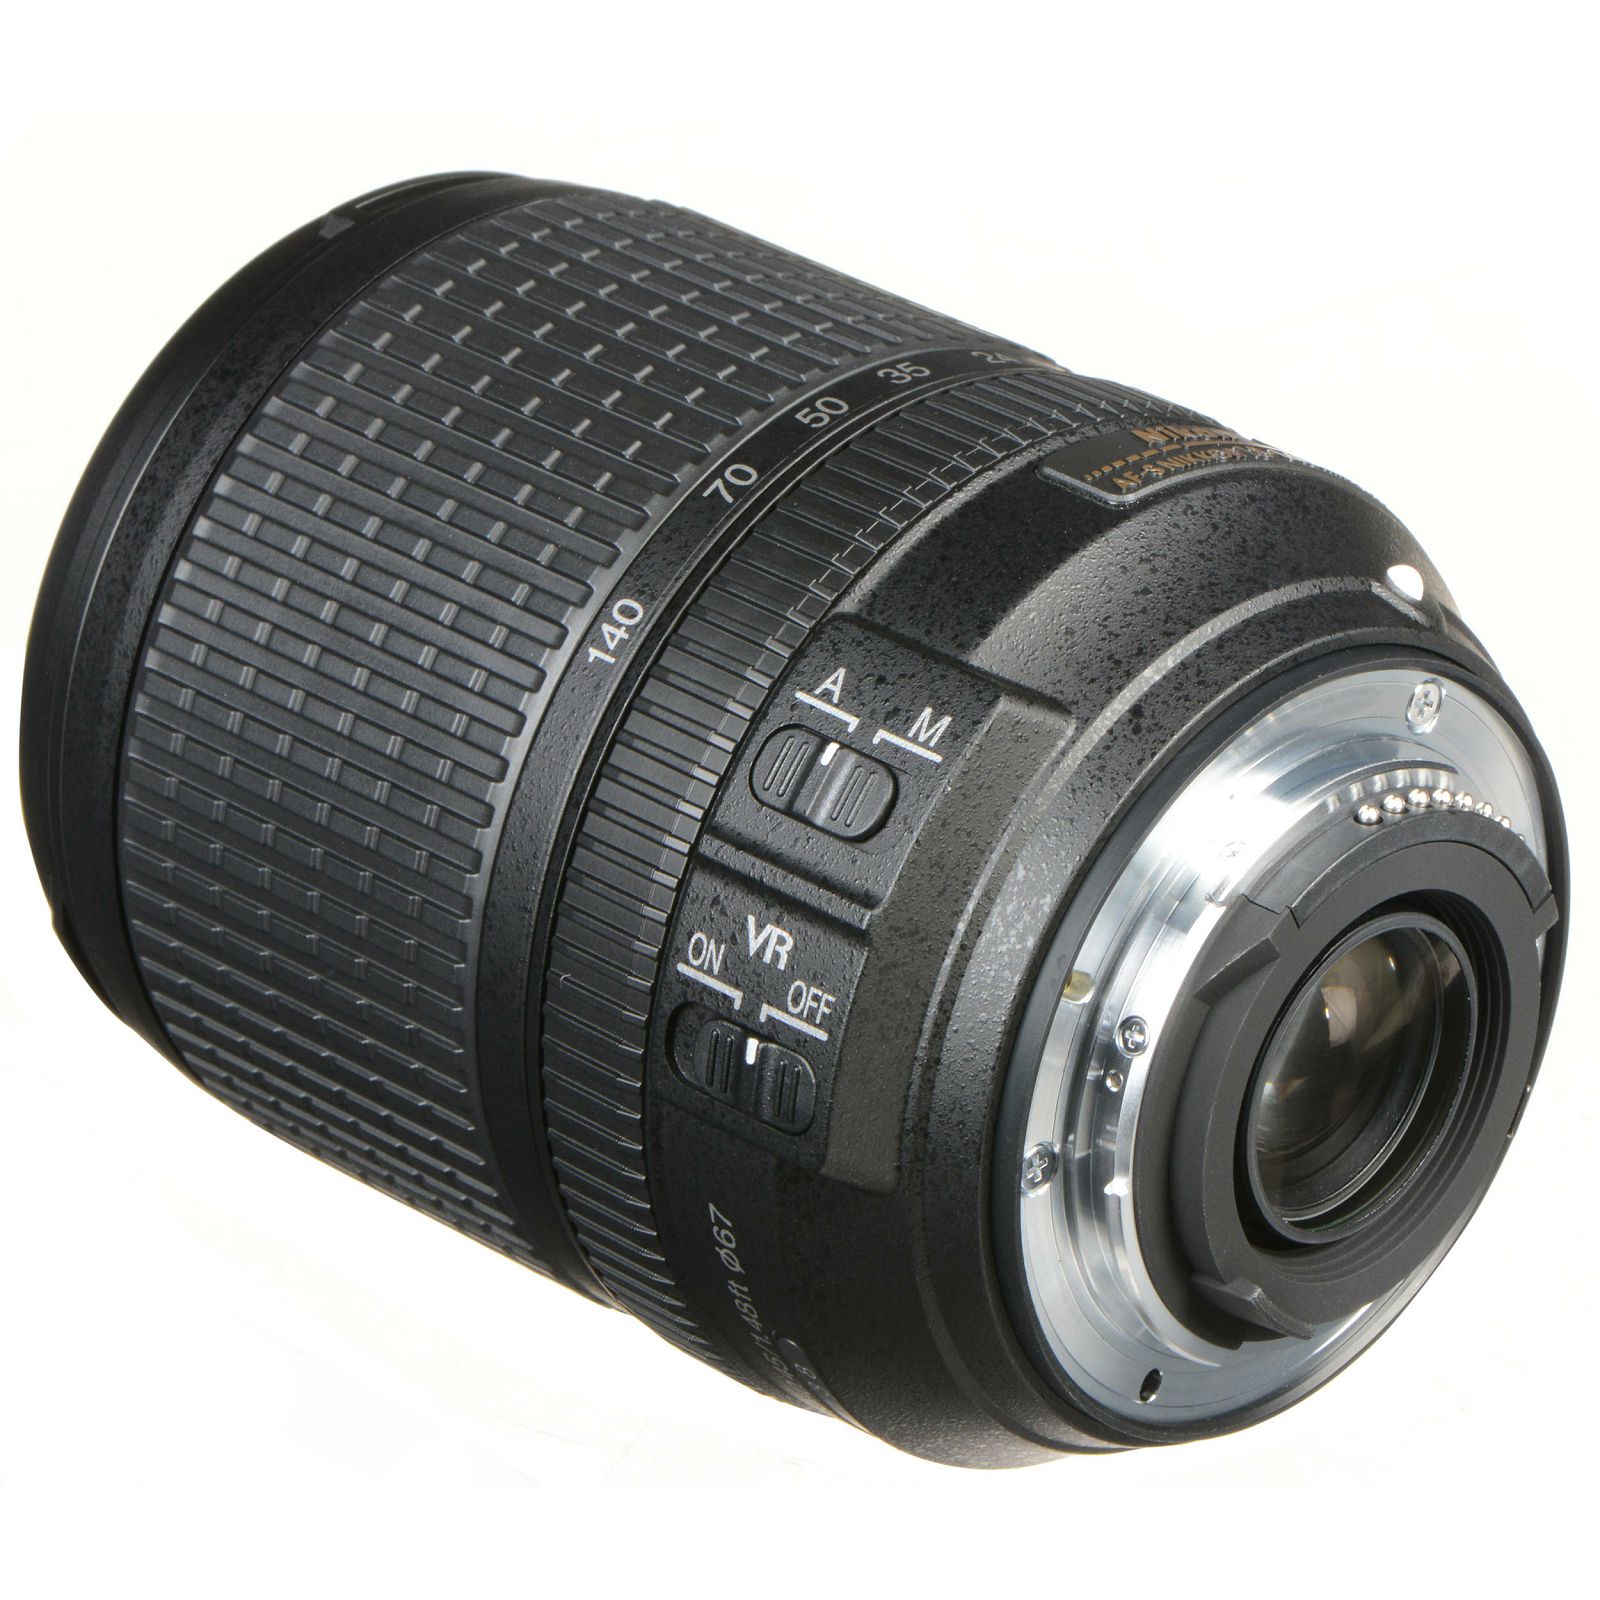 Nikon AF-S 18-140mm f/3.5-5.6G ED VR DX Allround objektiv Nikkor 18-140VR 3.5-5.6 G auto focus zoom lens (JAA819DA)